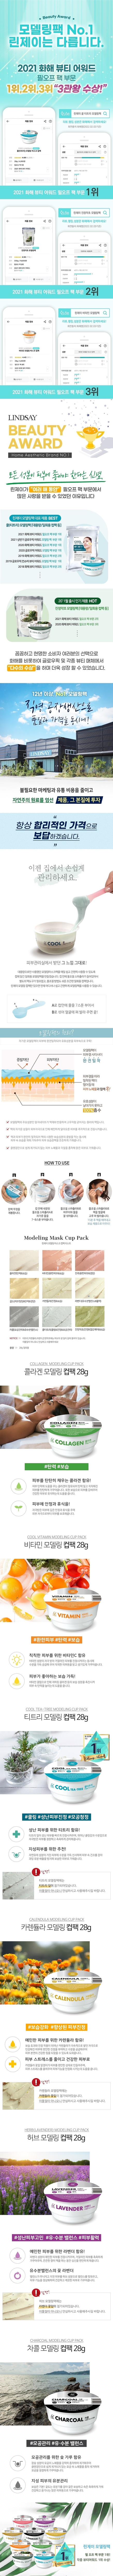 lindsay-modeling-mask-cup-pack-info.jpg